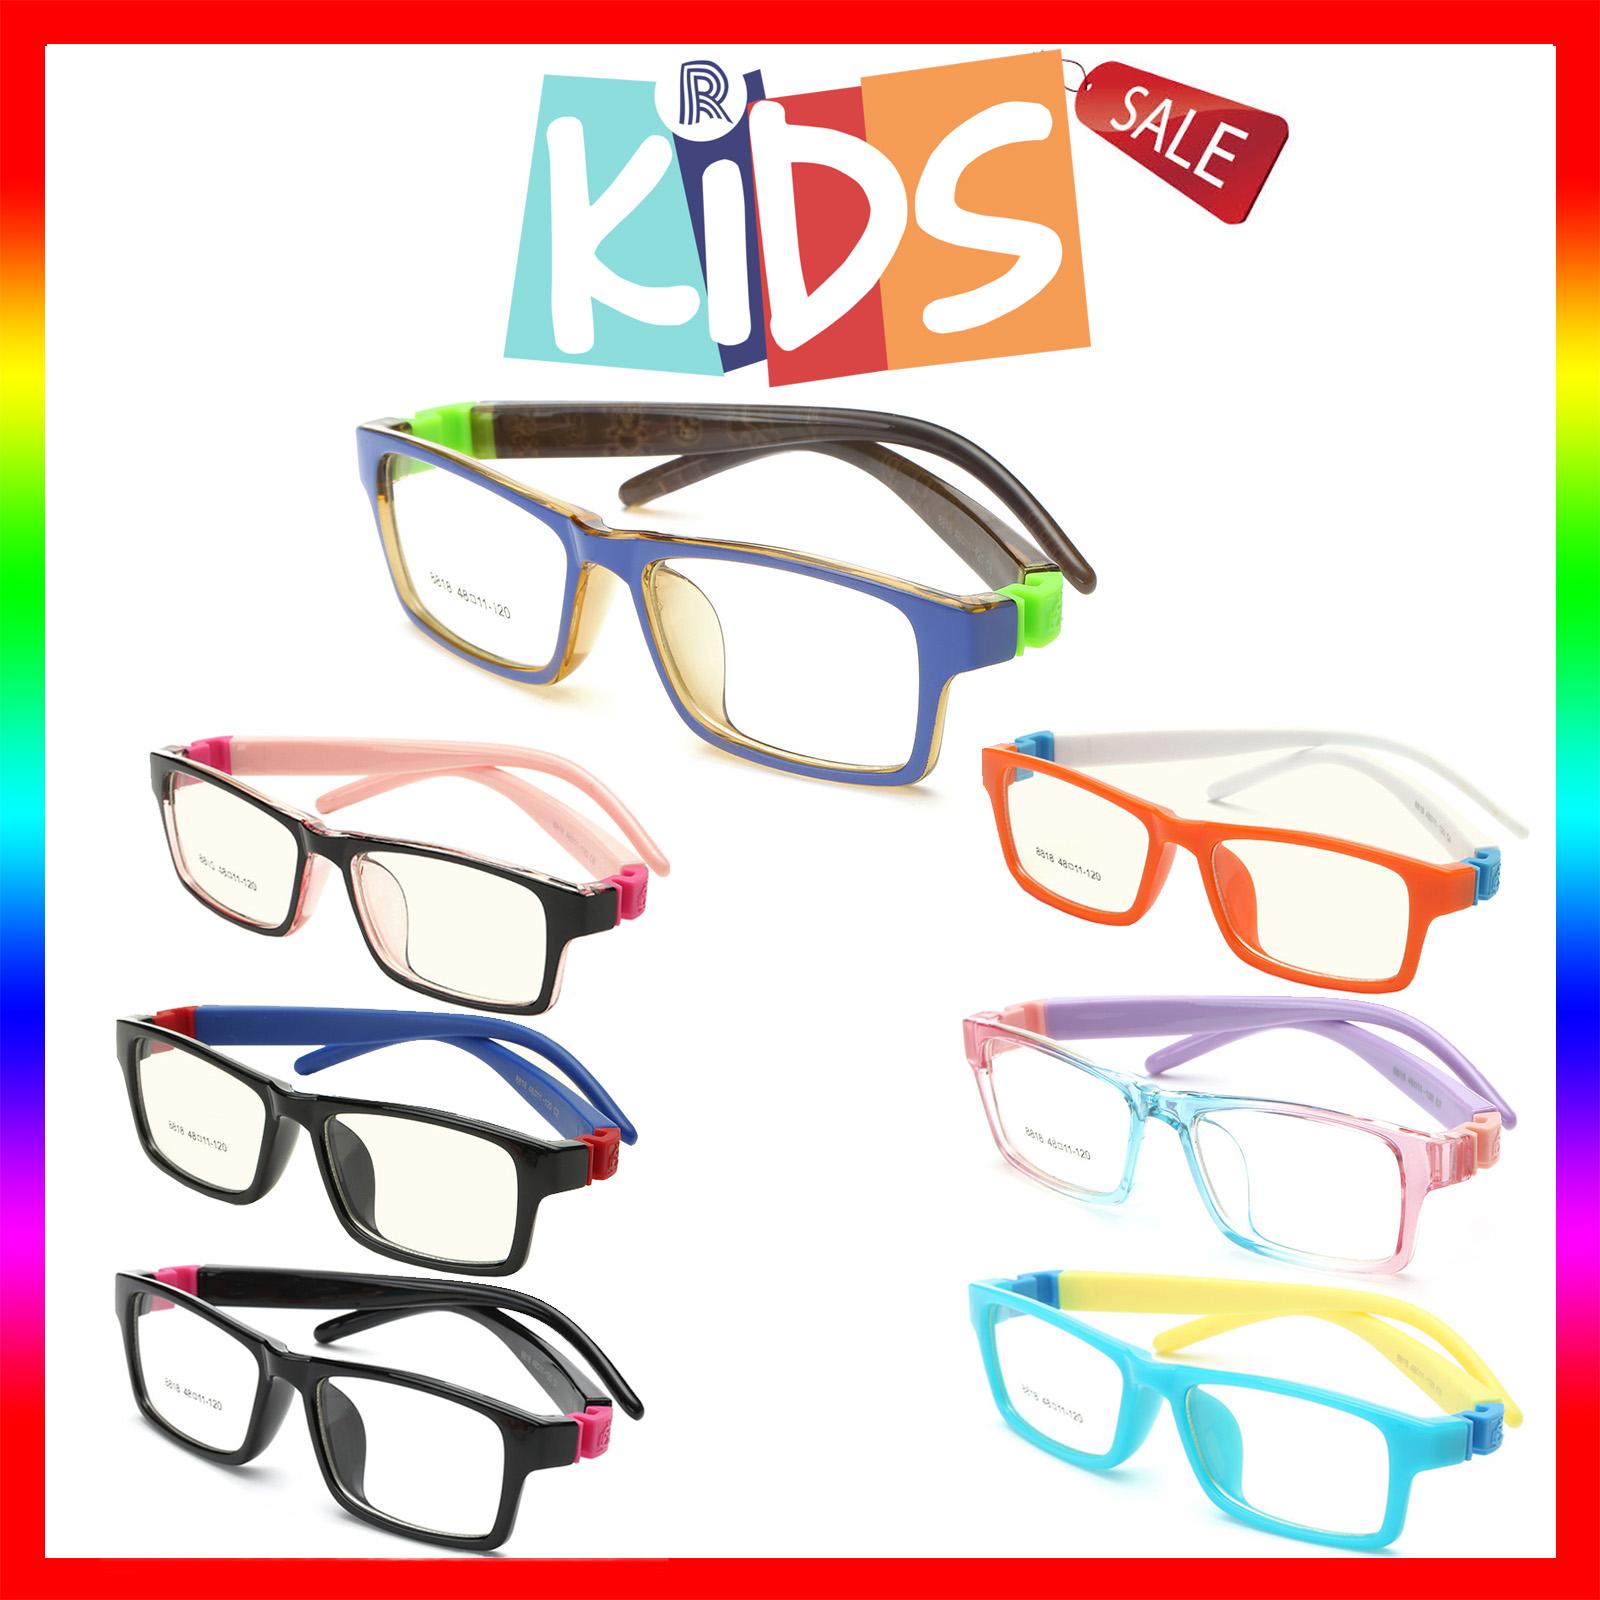 แว่นตาเกาหลีเด็ก Fashion Korea Children แว่นตาเด็ก รุ่น 8818 กรอบแว่นตาเด็ก Rectangle ทรงสี่เหลี่ยมผืนผ้า Eyeglass baby frame ( สำหรับตัดเลนส์ ) วัสดุ PC เบา ขาข้อต่อ Kid leg joints Plastic Grade A material Eyewear Top Glasses